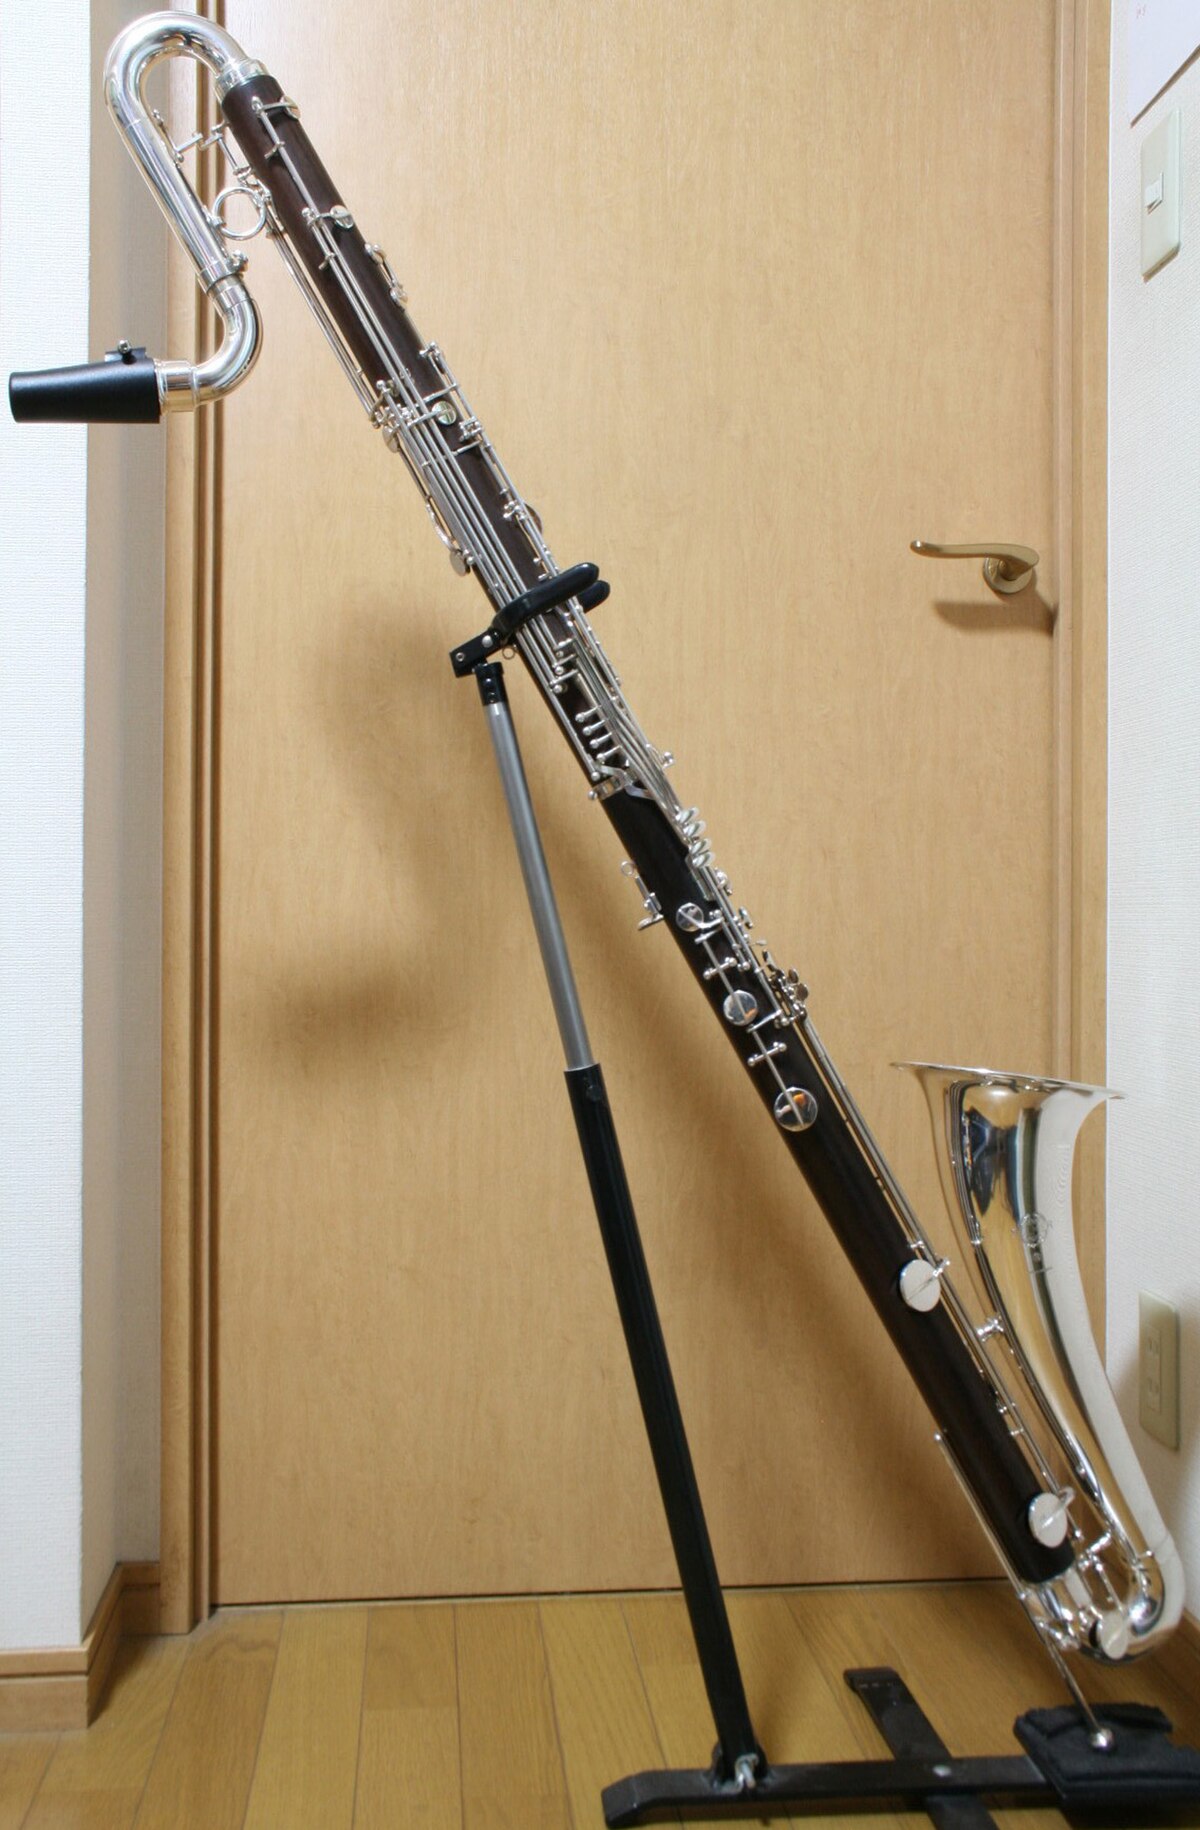 Contra-alto clarinet - Wikipedia